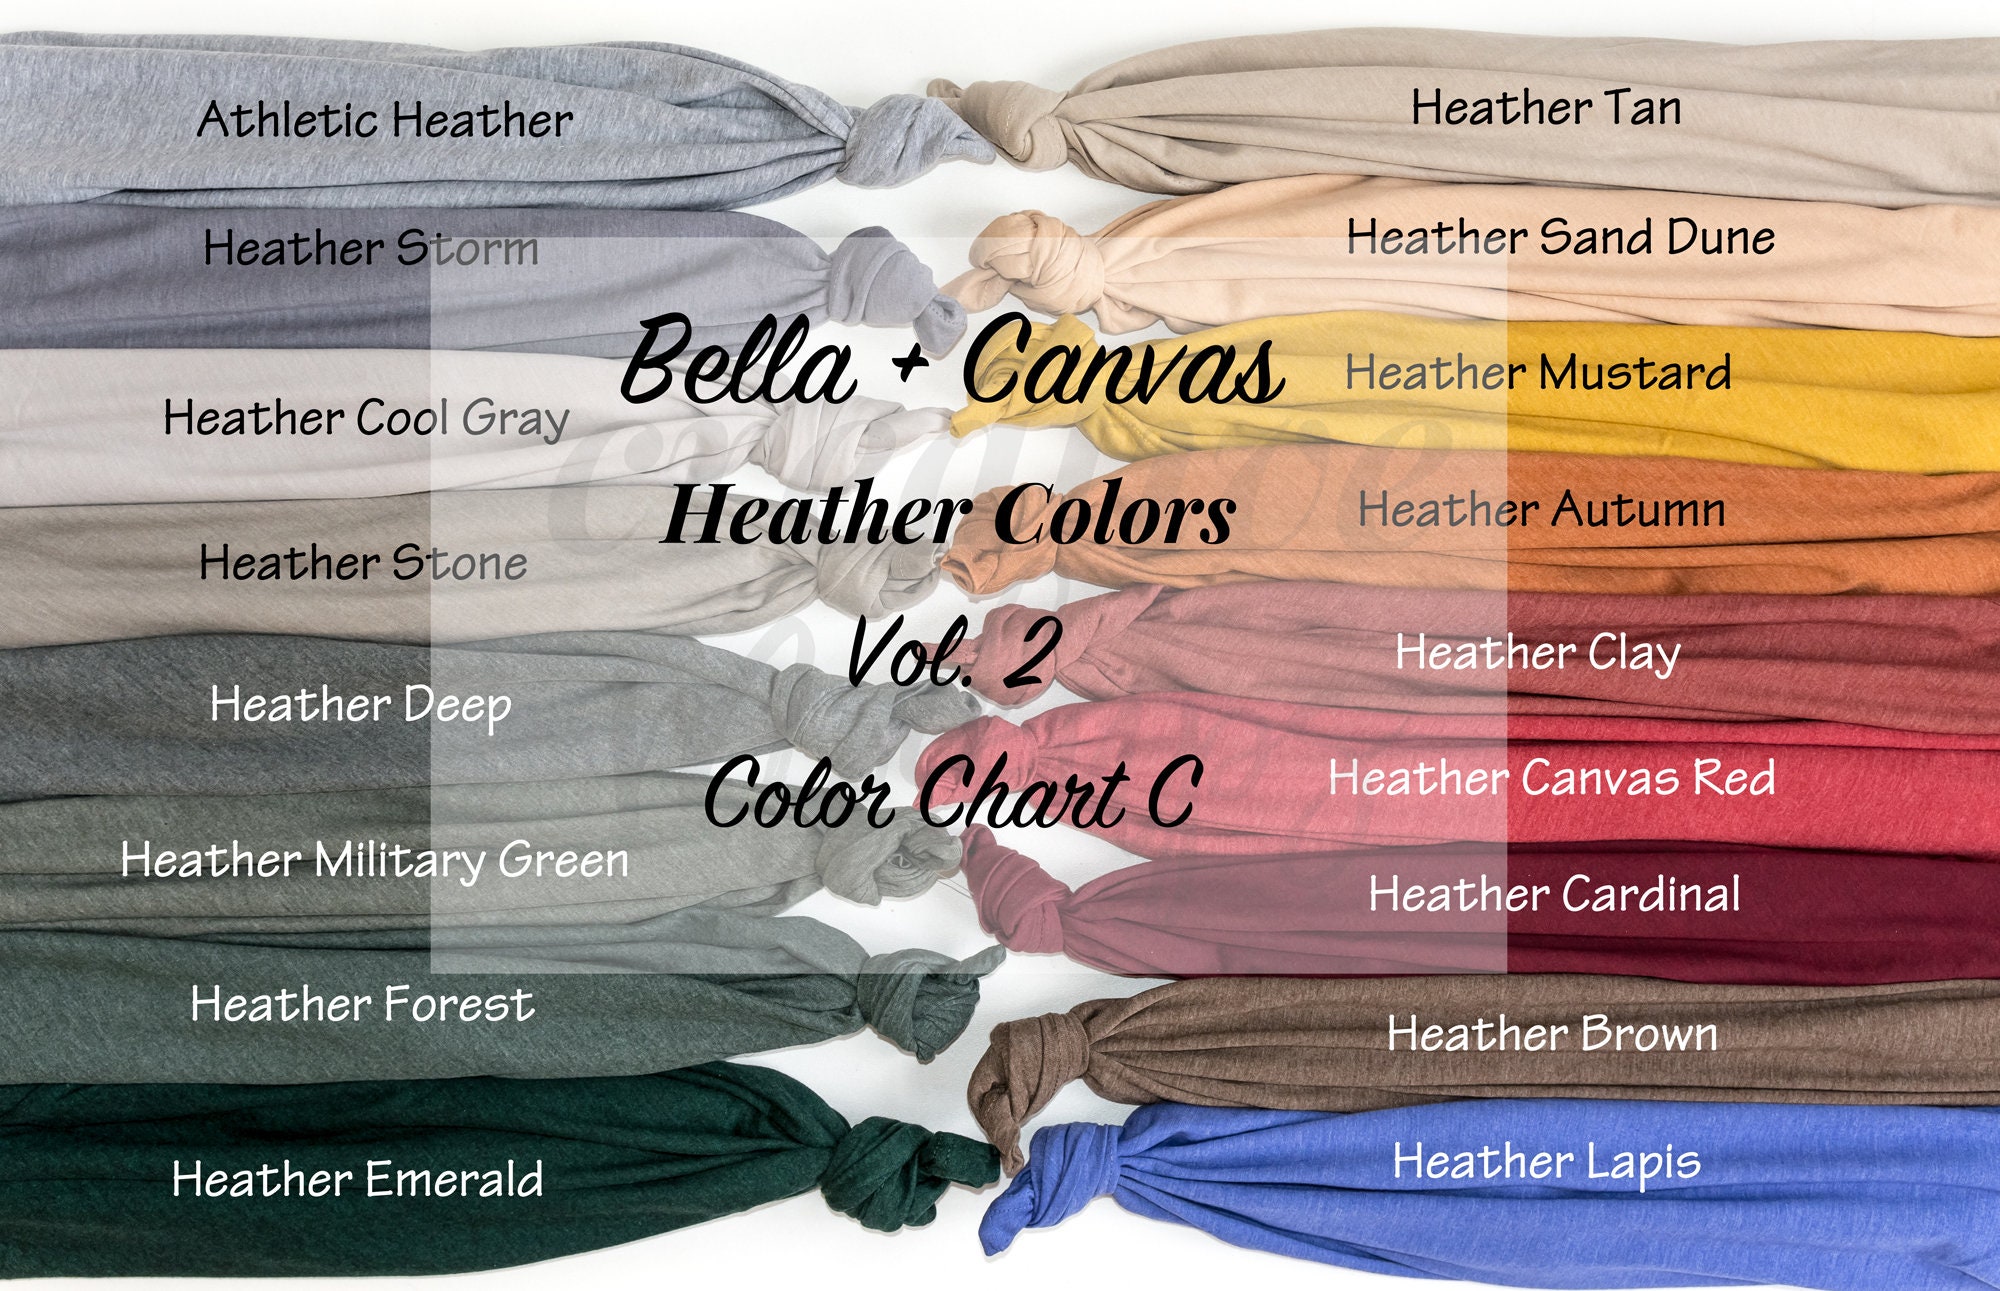 Bella 3001cvc Color Chart